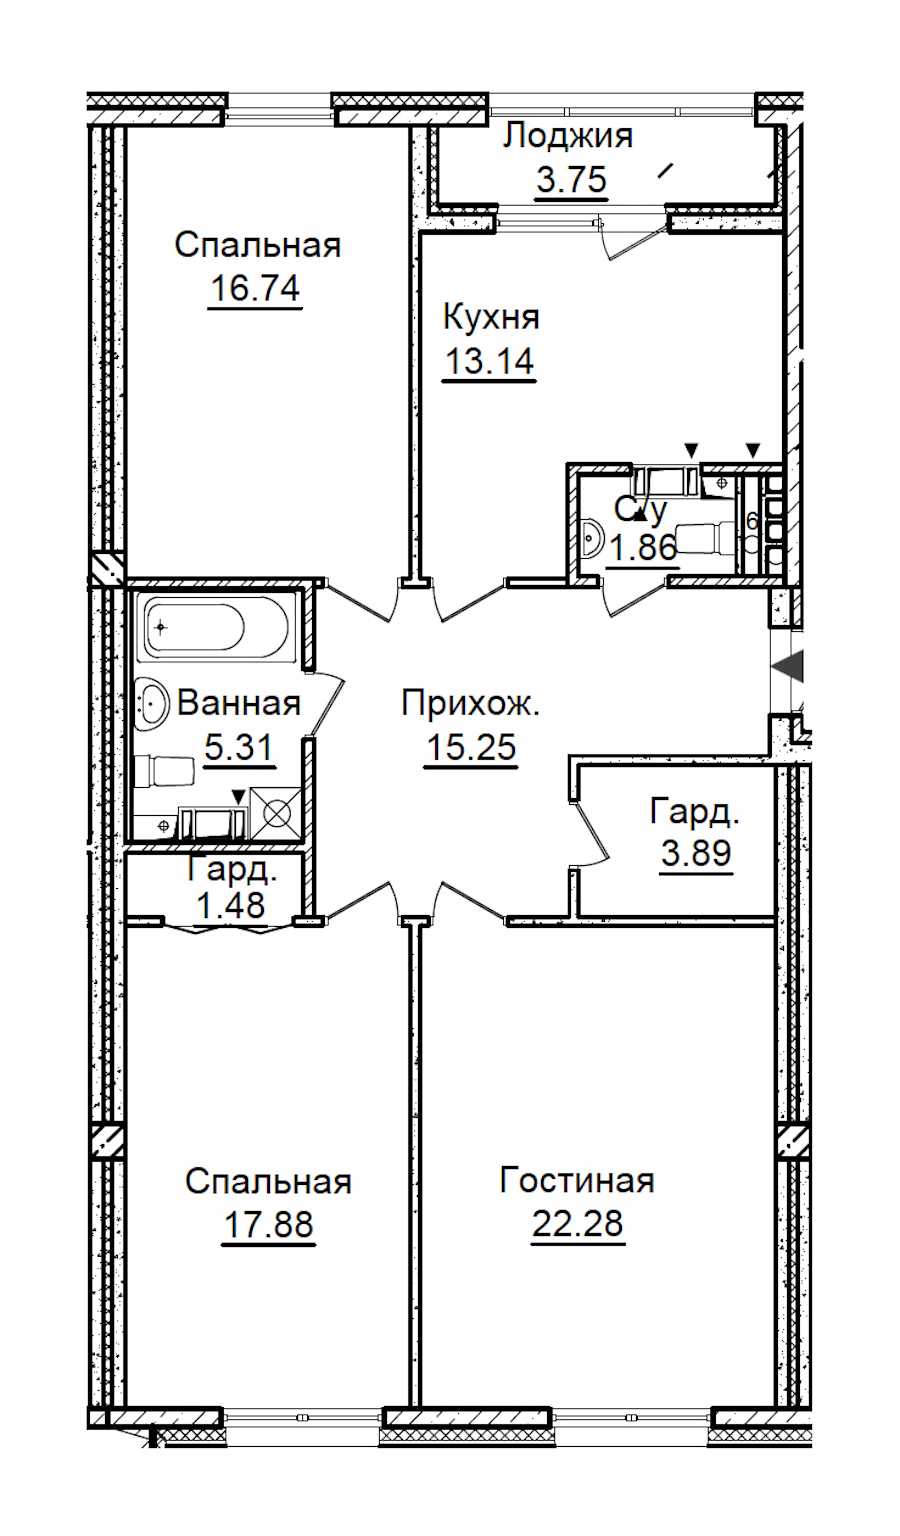 Трехкомнатная квартира в : площадь 99.71 м2 , этаж: 6 – купить в Санкт-Петербурге